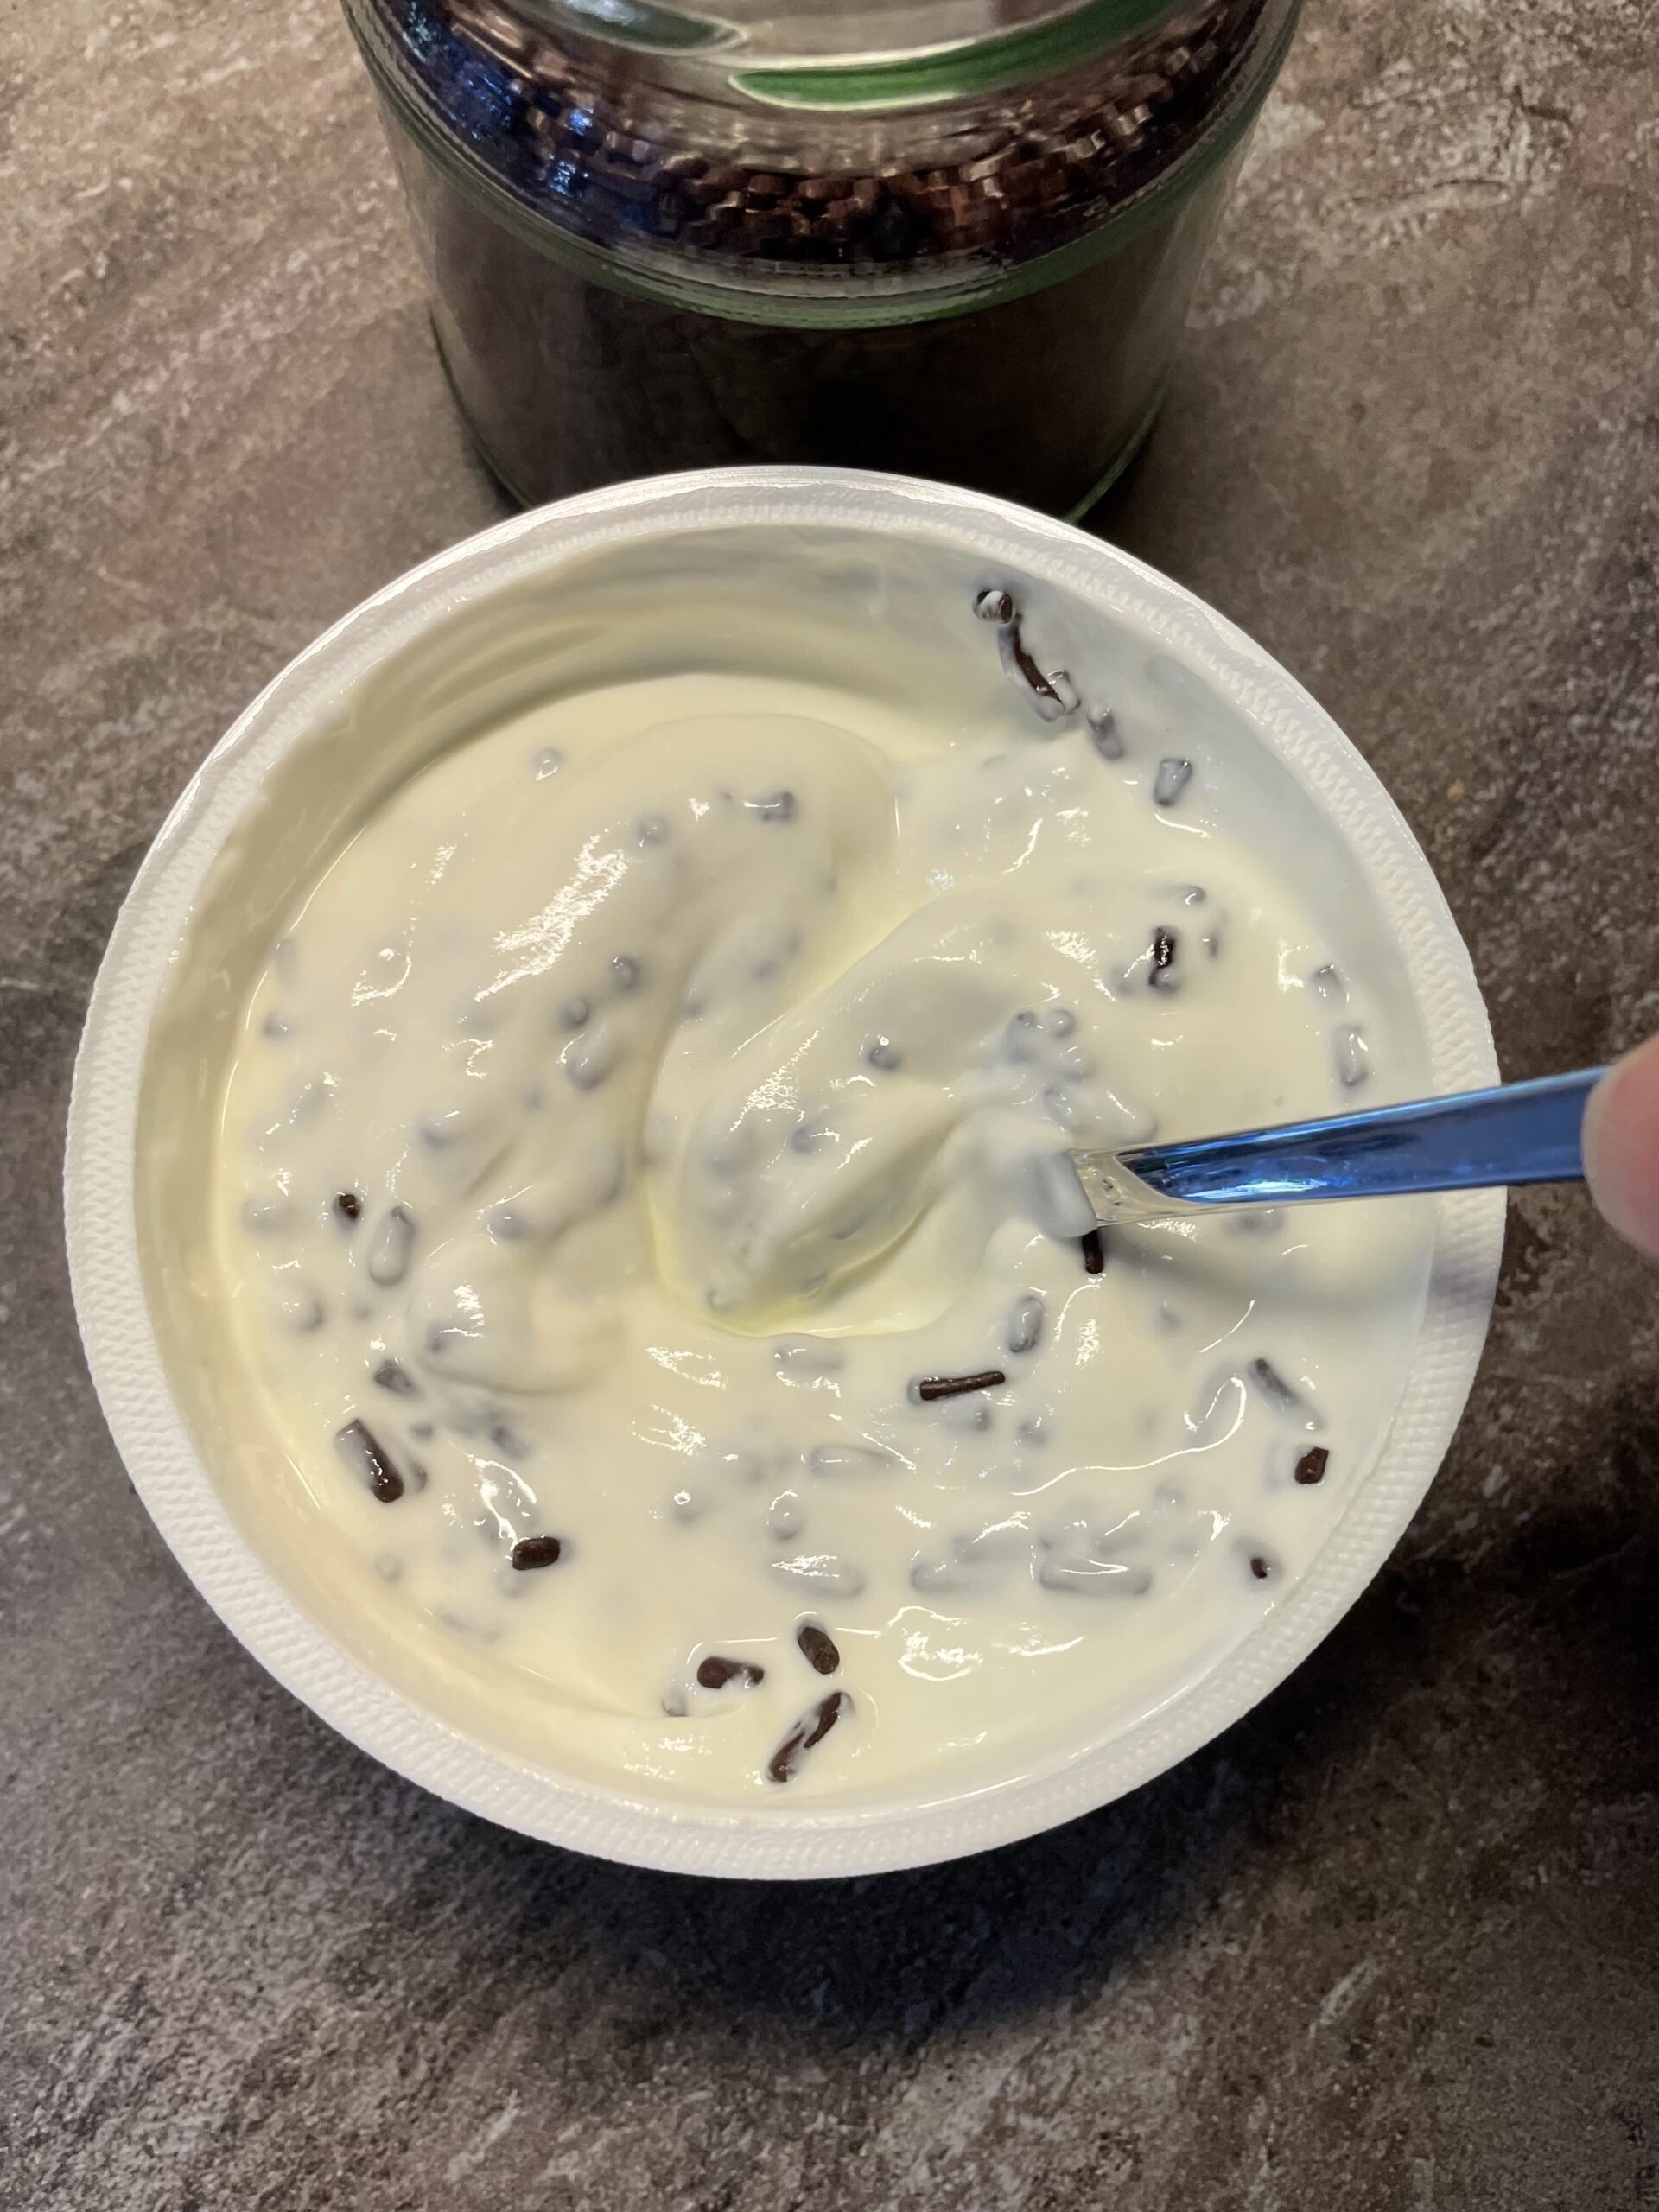 Bild zum Schritt 15 für das Bastel- und DIY-Abenteuer für Kinder: 'Achtet darauf, dass der Joghurt nicht herausspritzt.'